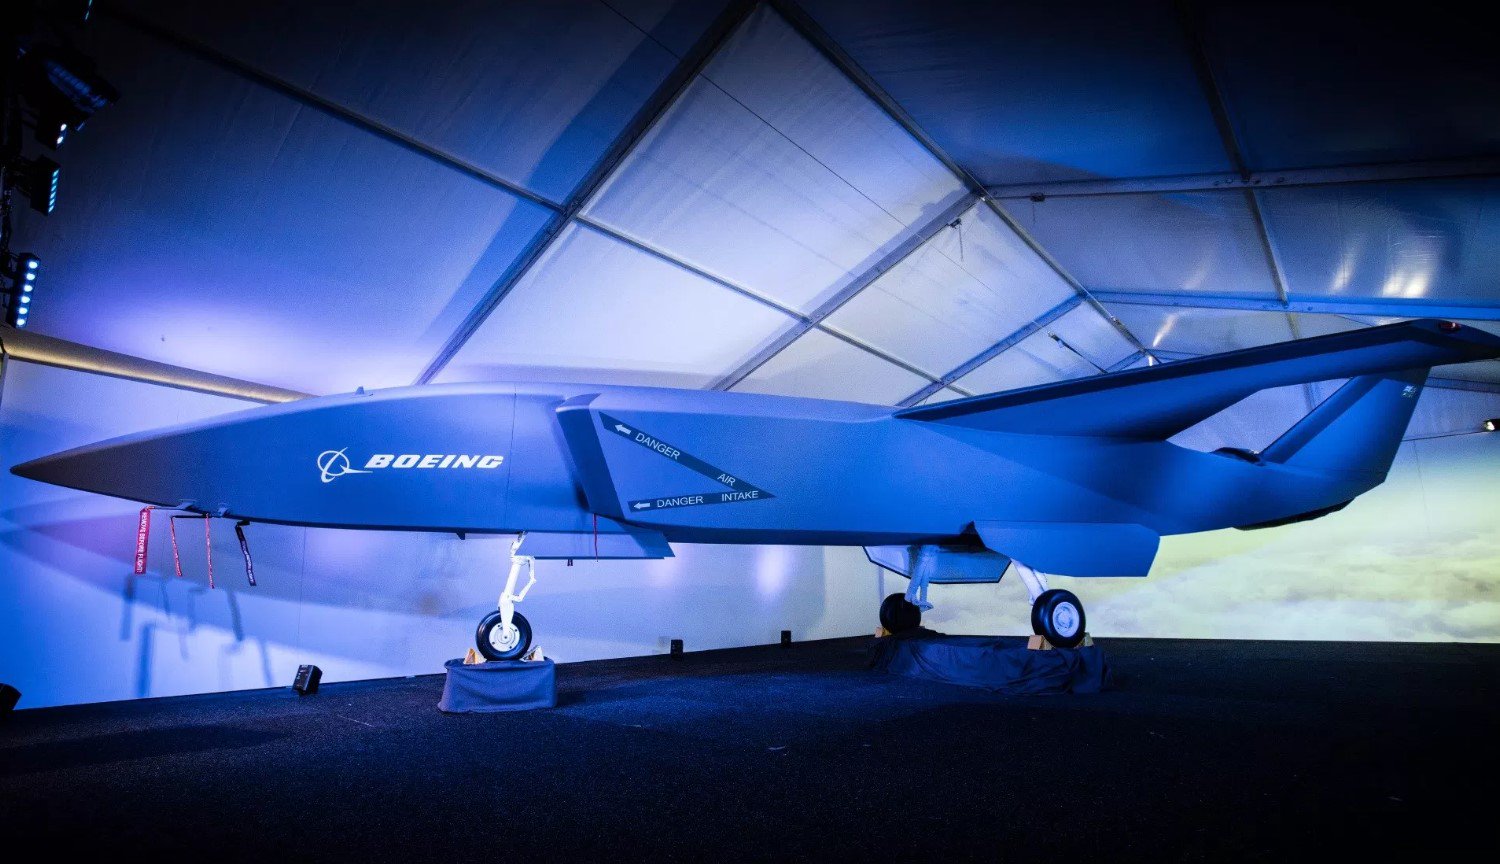 Unbemanntes Kampfflugzeug Boeing — schon im Jahr 2020